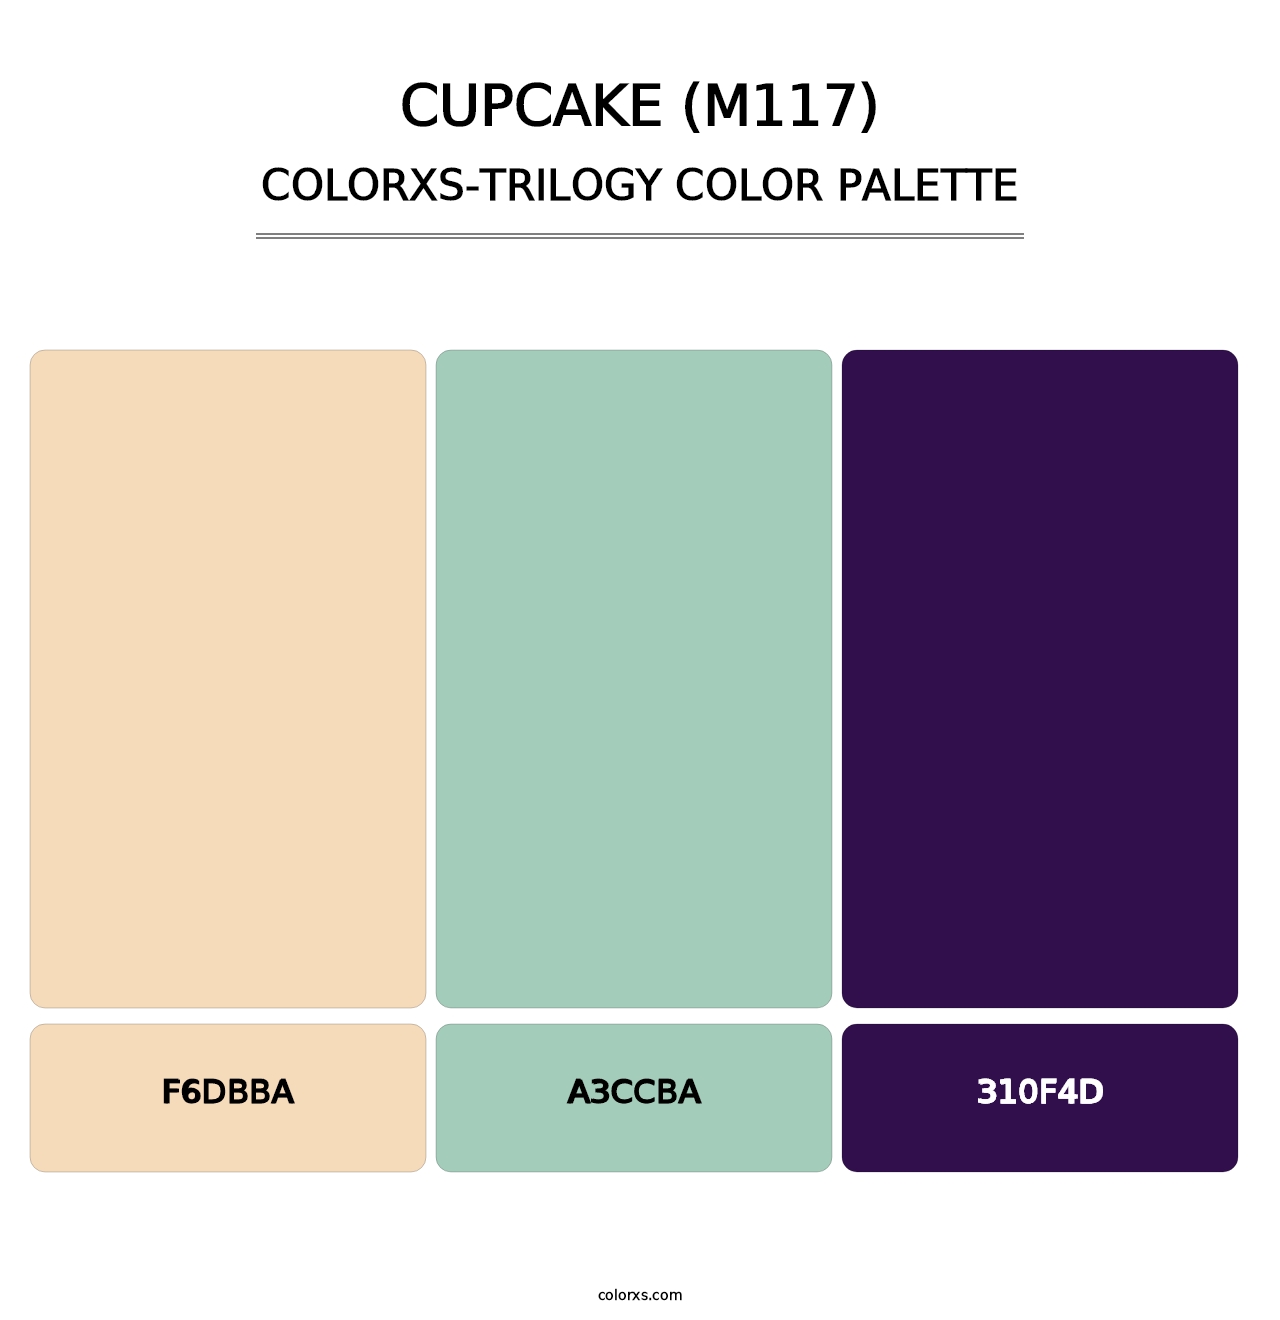 Cupcake (M117) - Colorxs Trilogy Palette